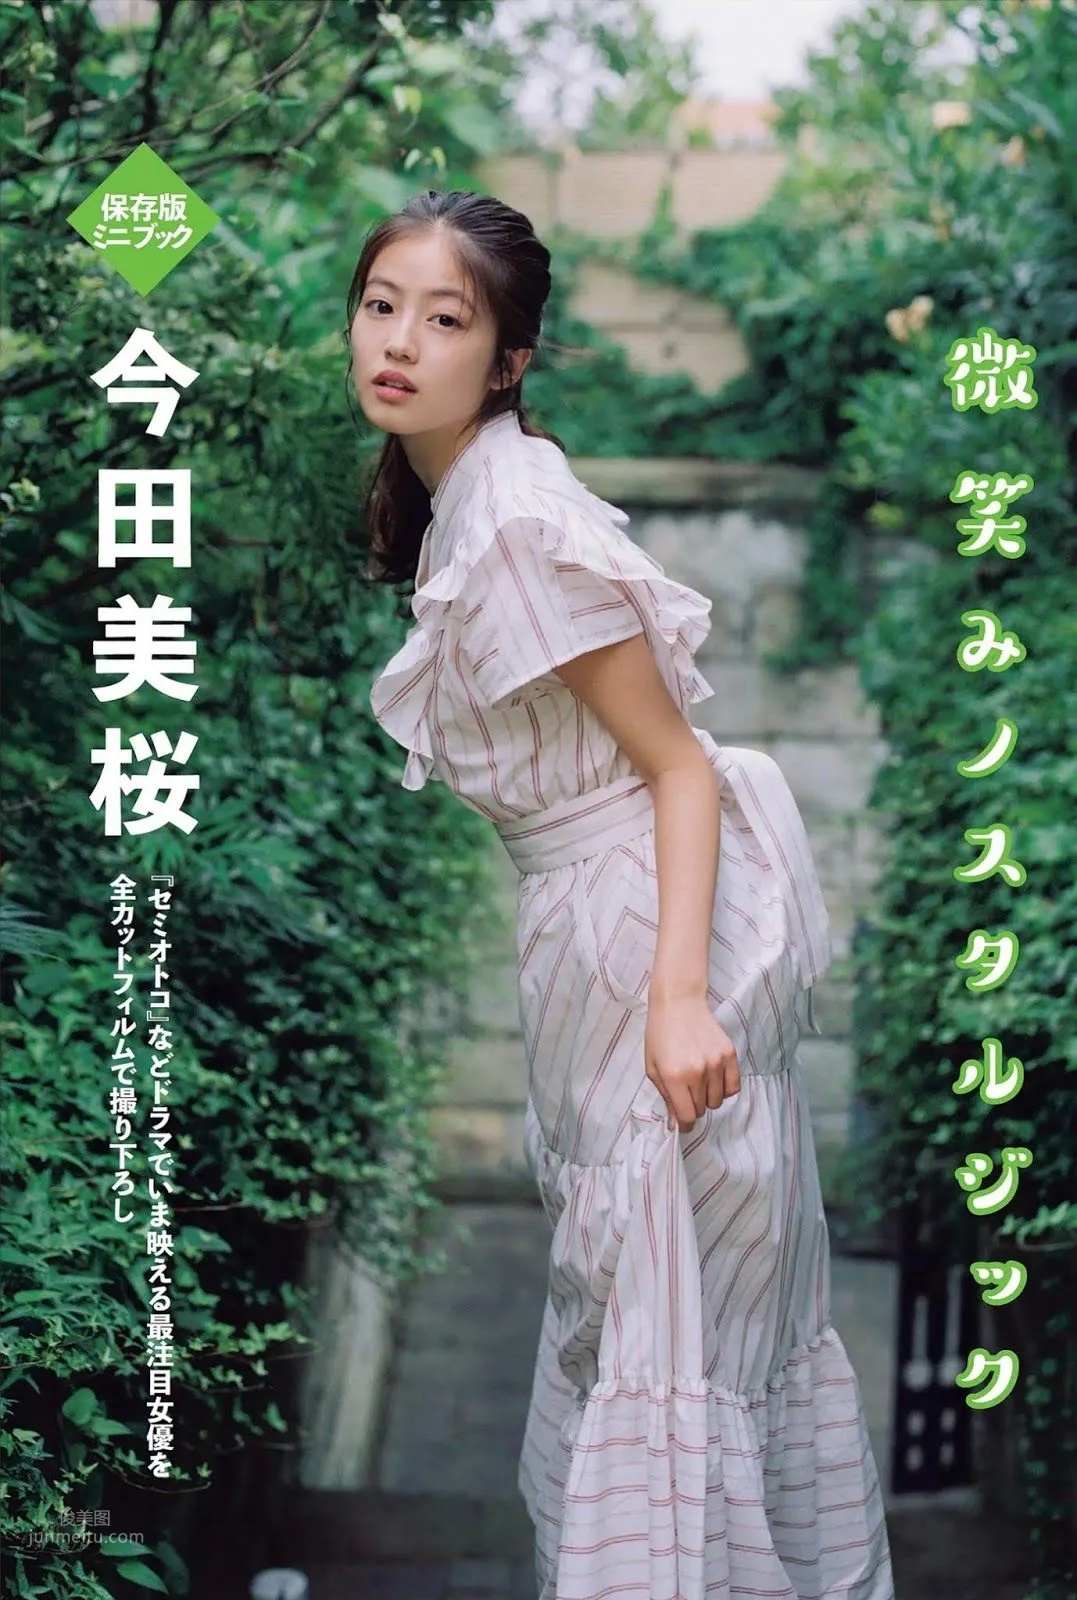 今田美桜, Imada Mio - Weekly Playboy, FLASH, FRIDAY, 2019_49